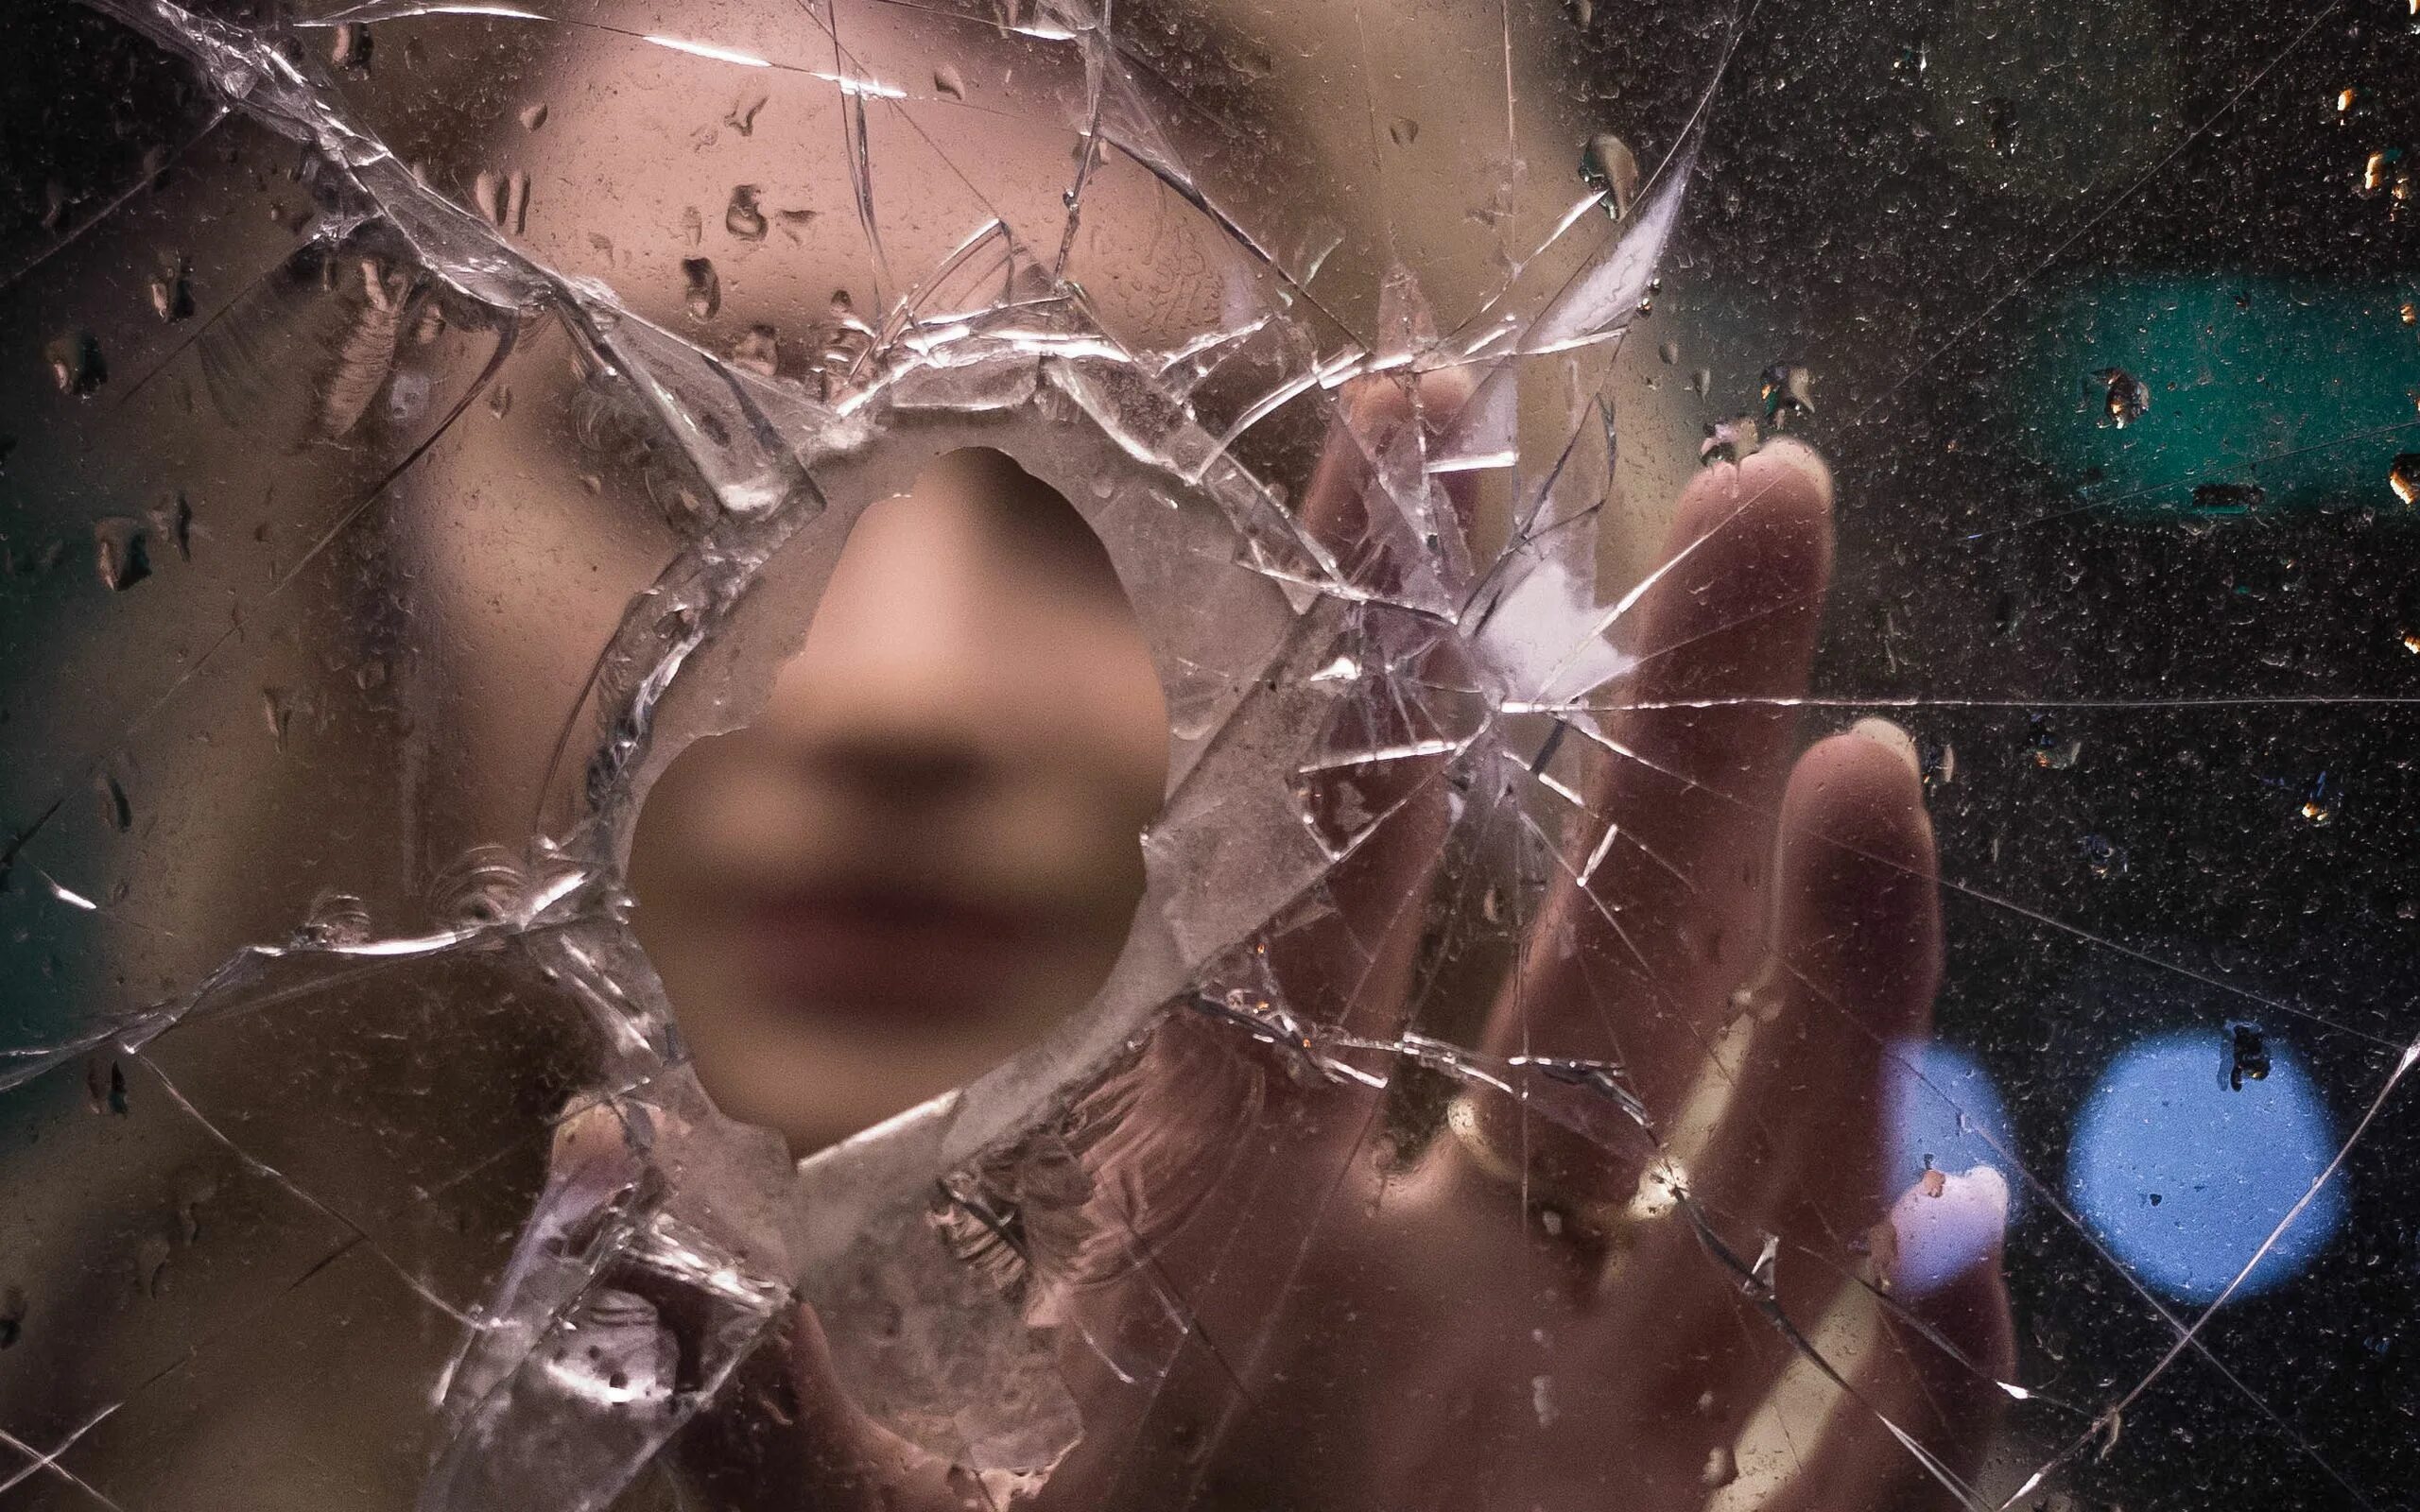 Сквозь трещины. Разбитое стекло. Девушка в разбитом зеркале. Фотосессия с разбитым стеклом.